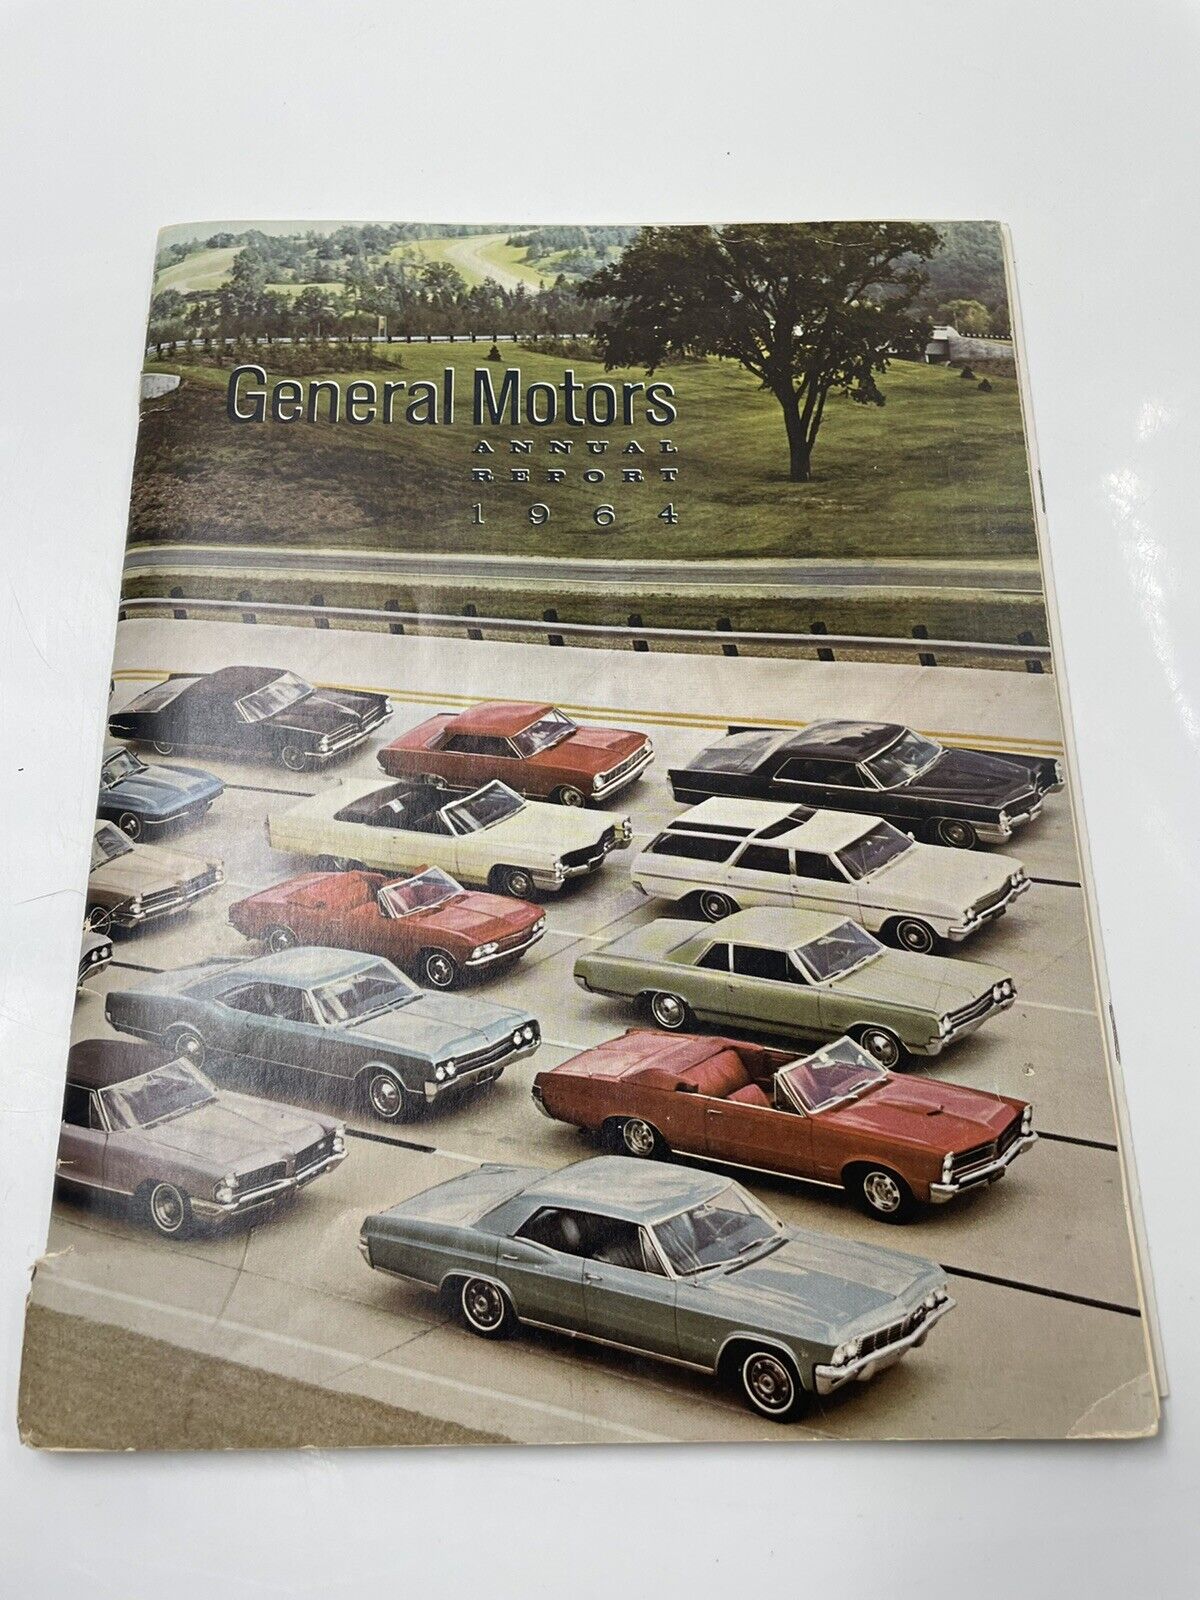 Original 1964 GENERAL MOTORS ANNUAL REPORT.....